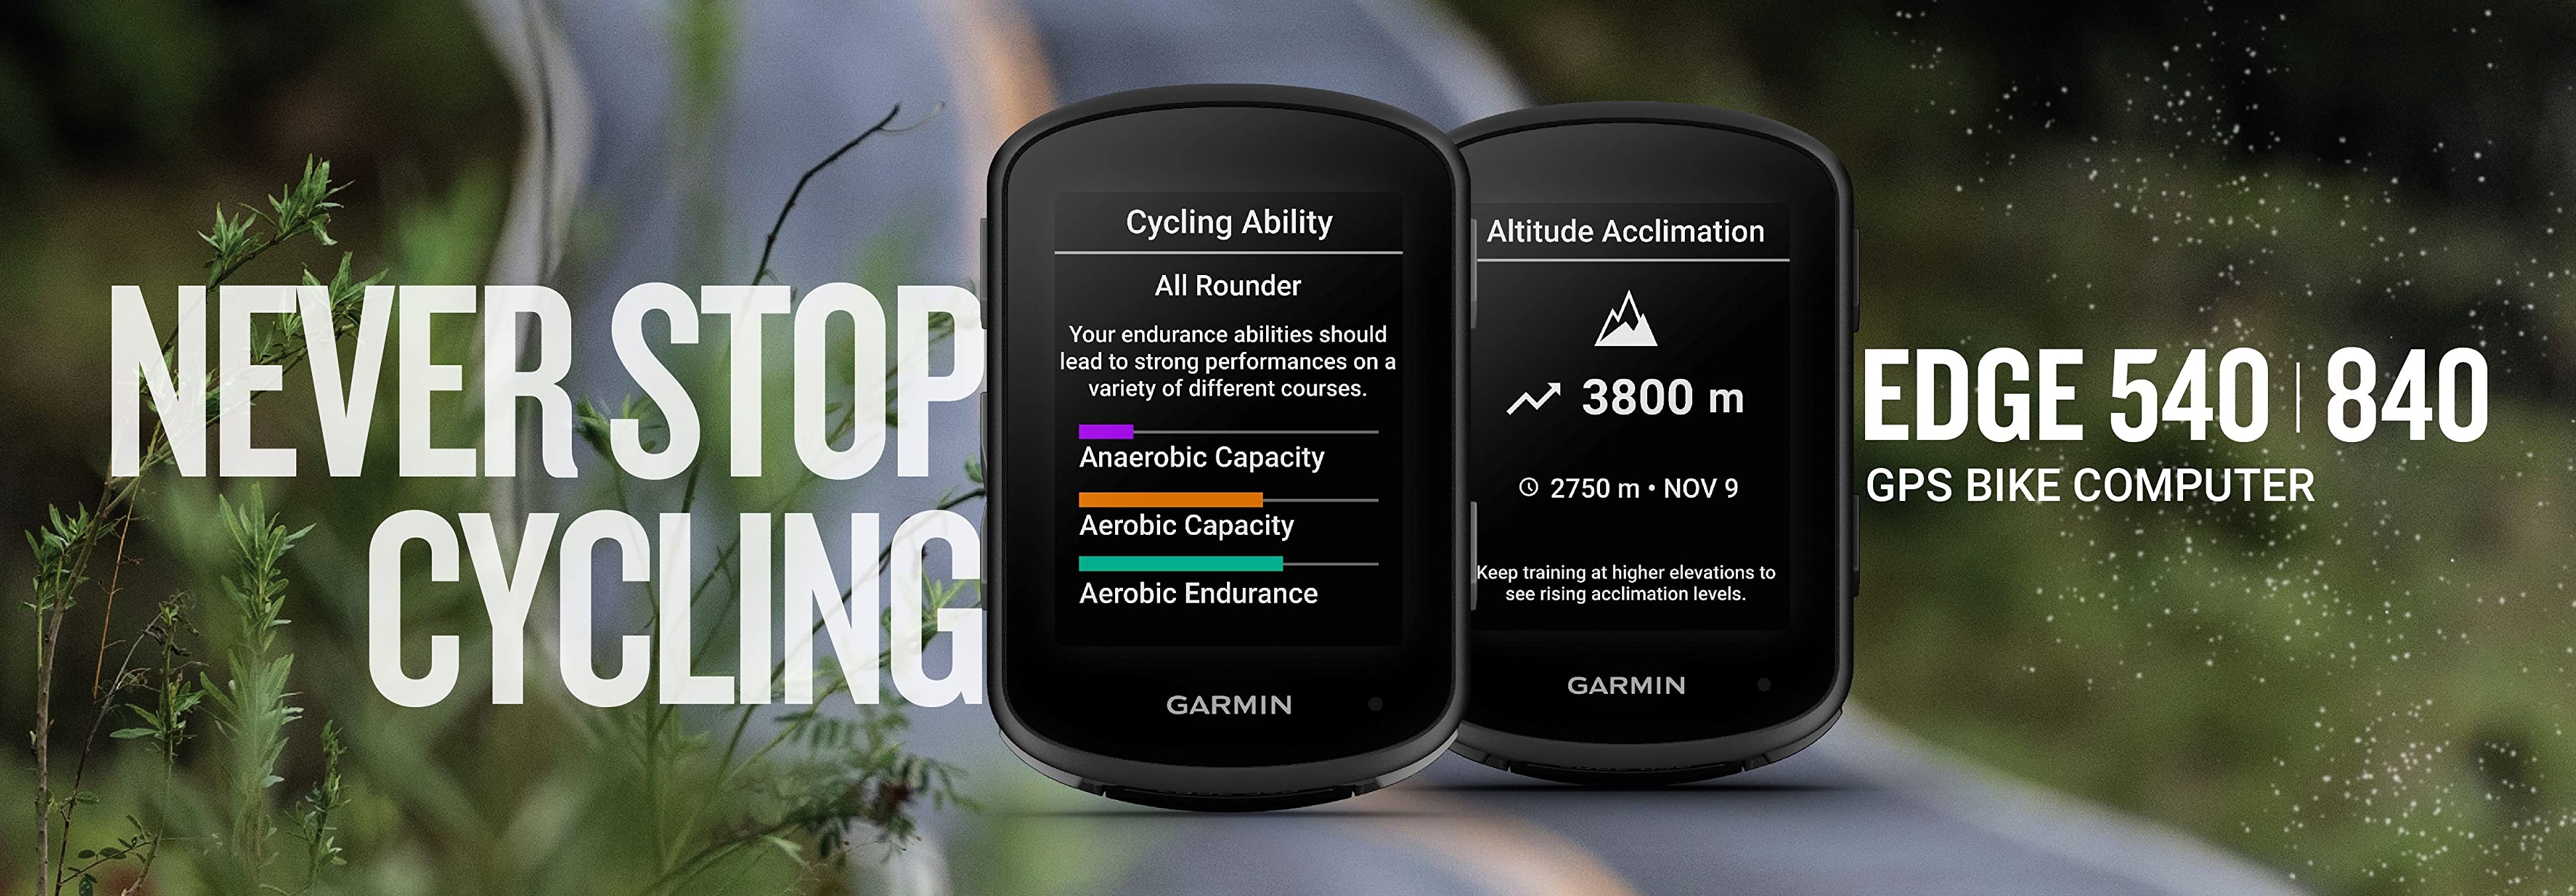 Garmin Edge 540 Bike Computer - GPS